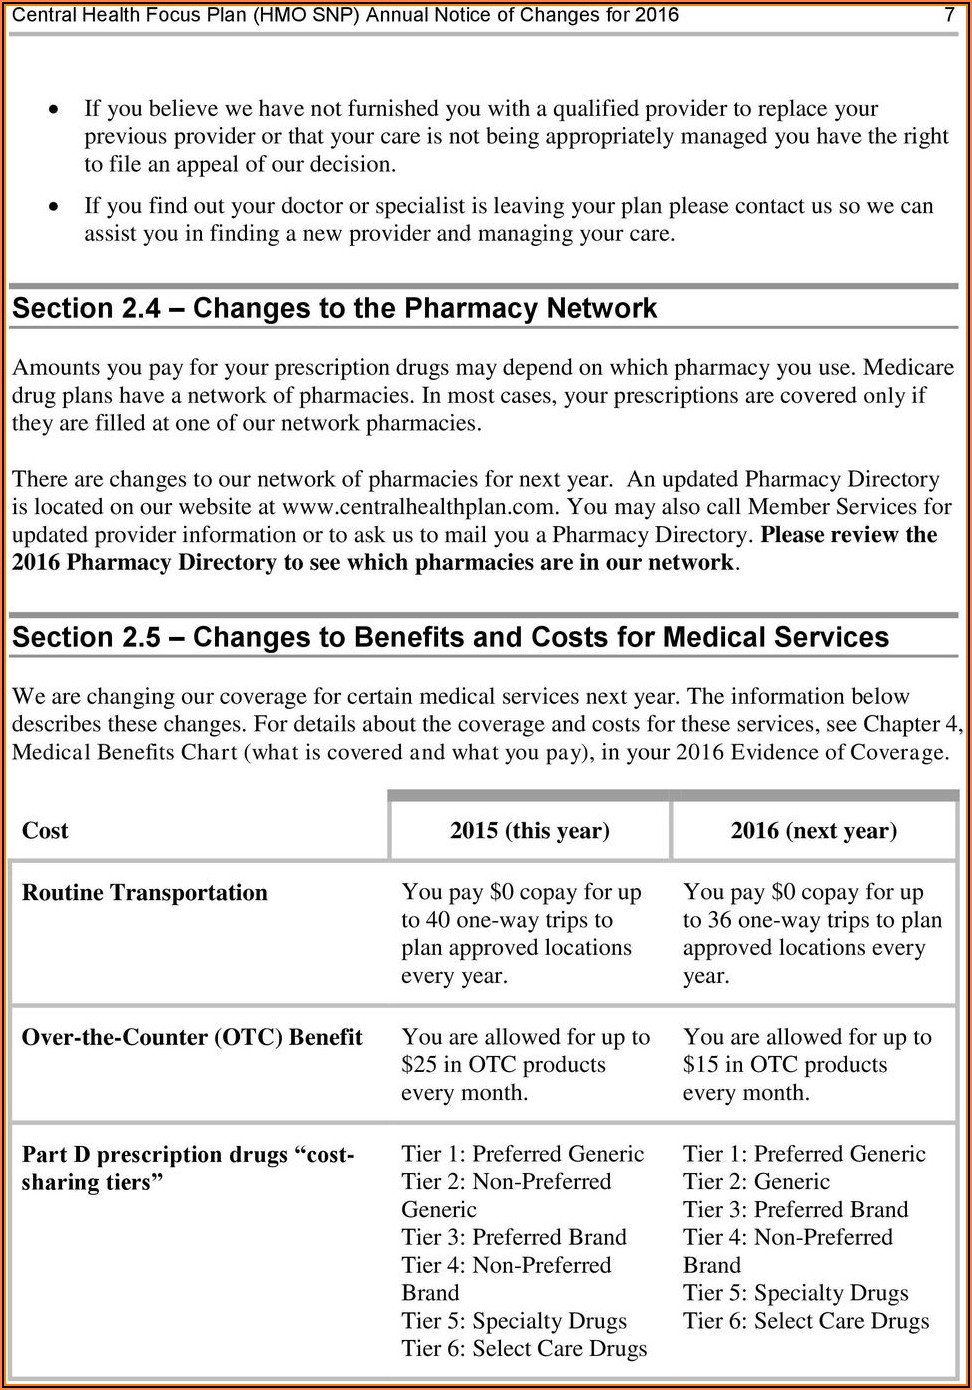 Central Health Medicare Plan Otc Order Form